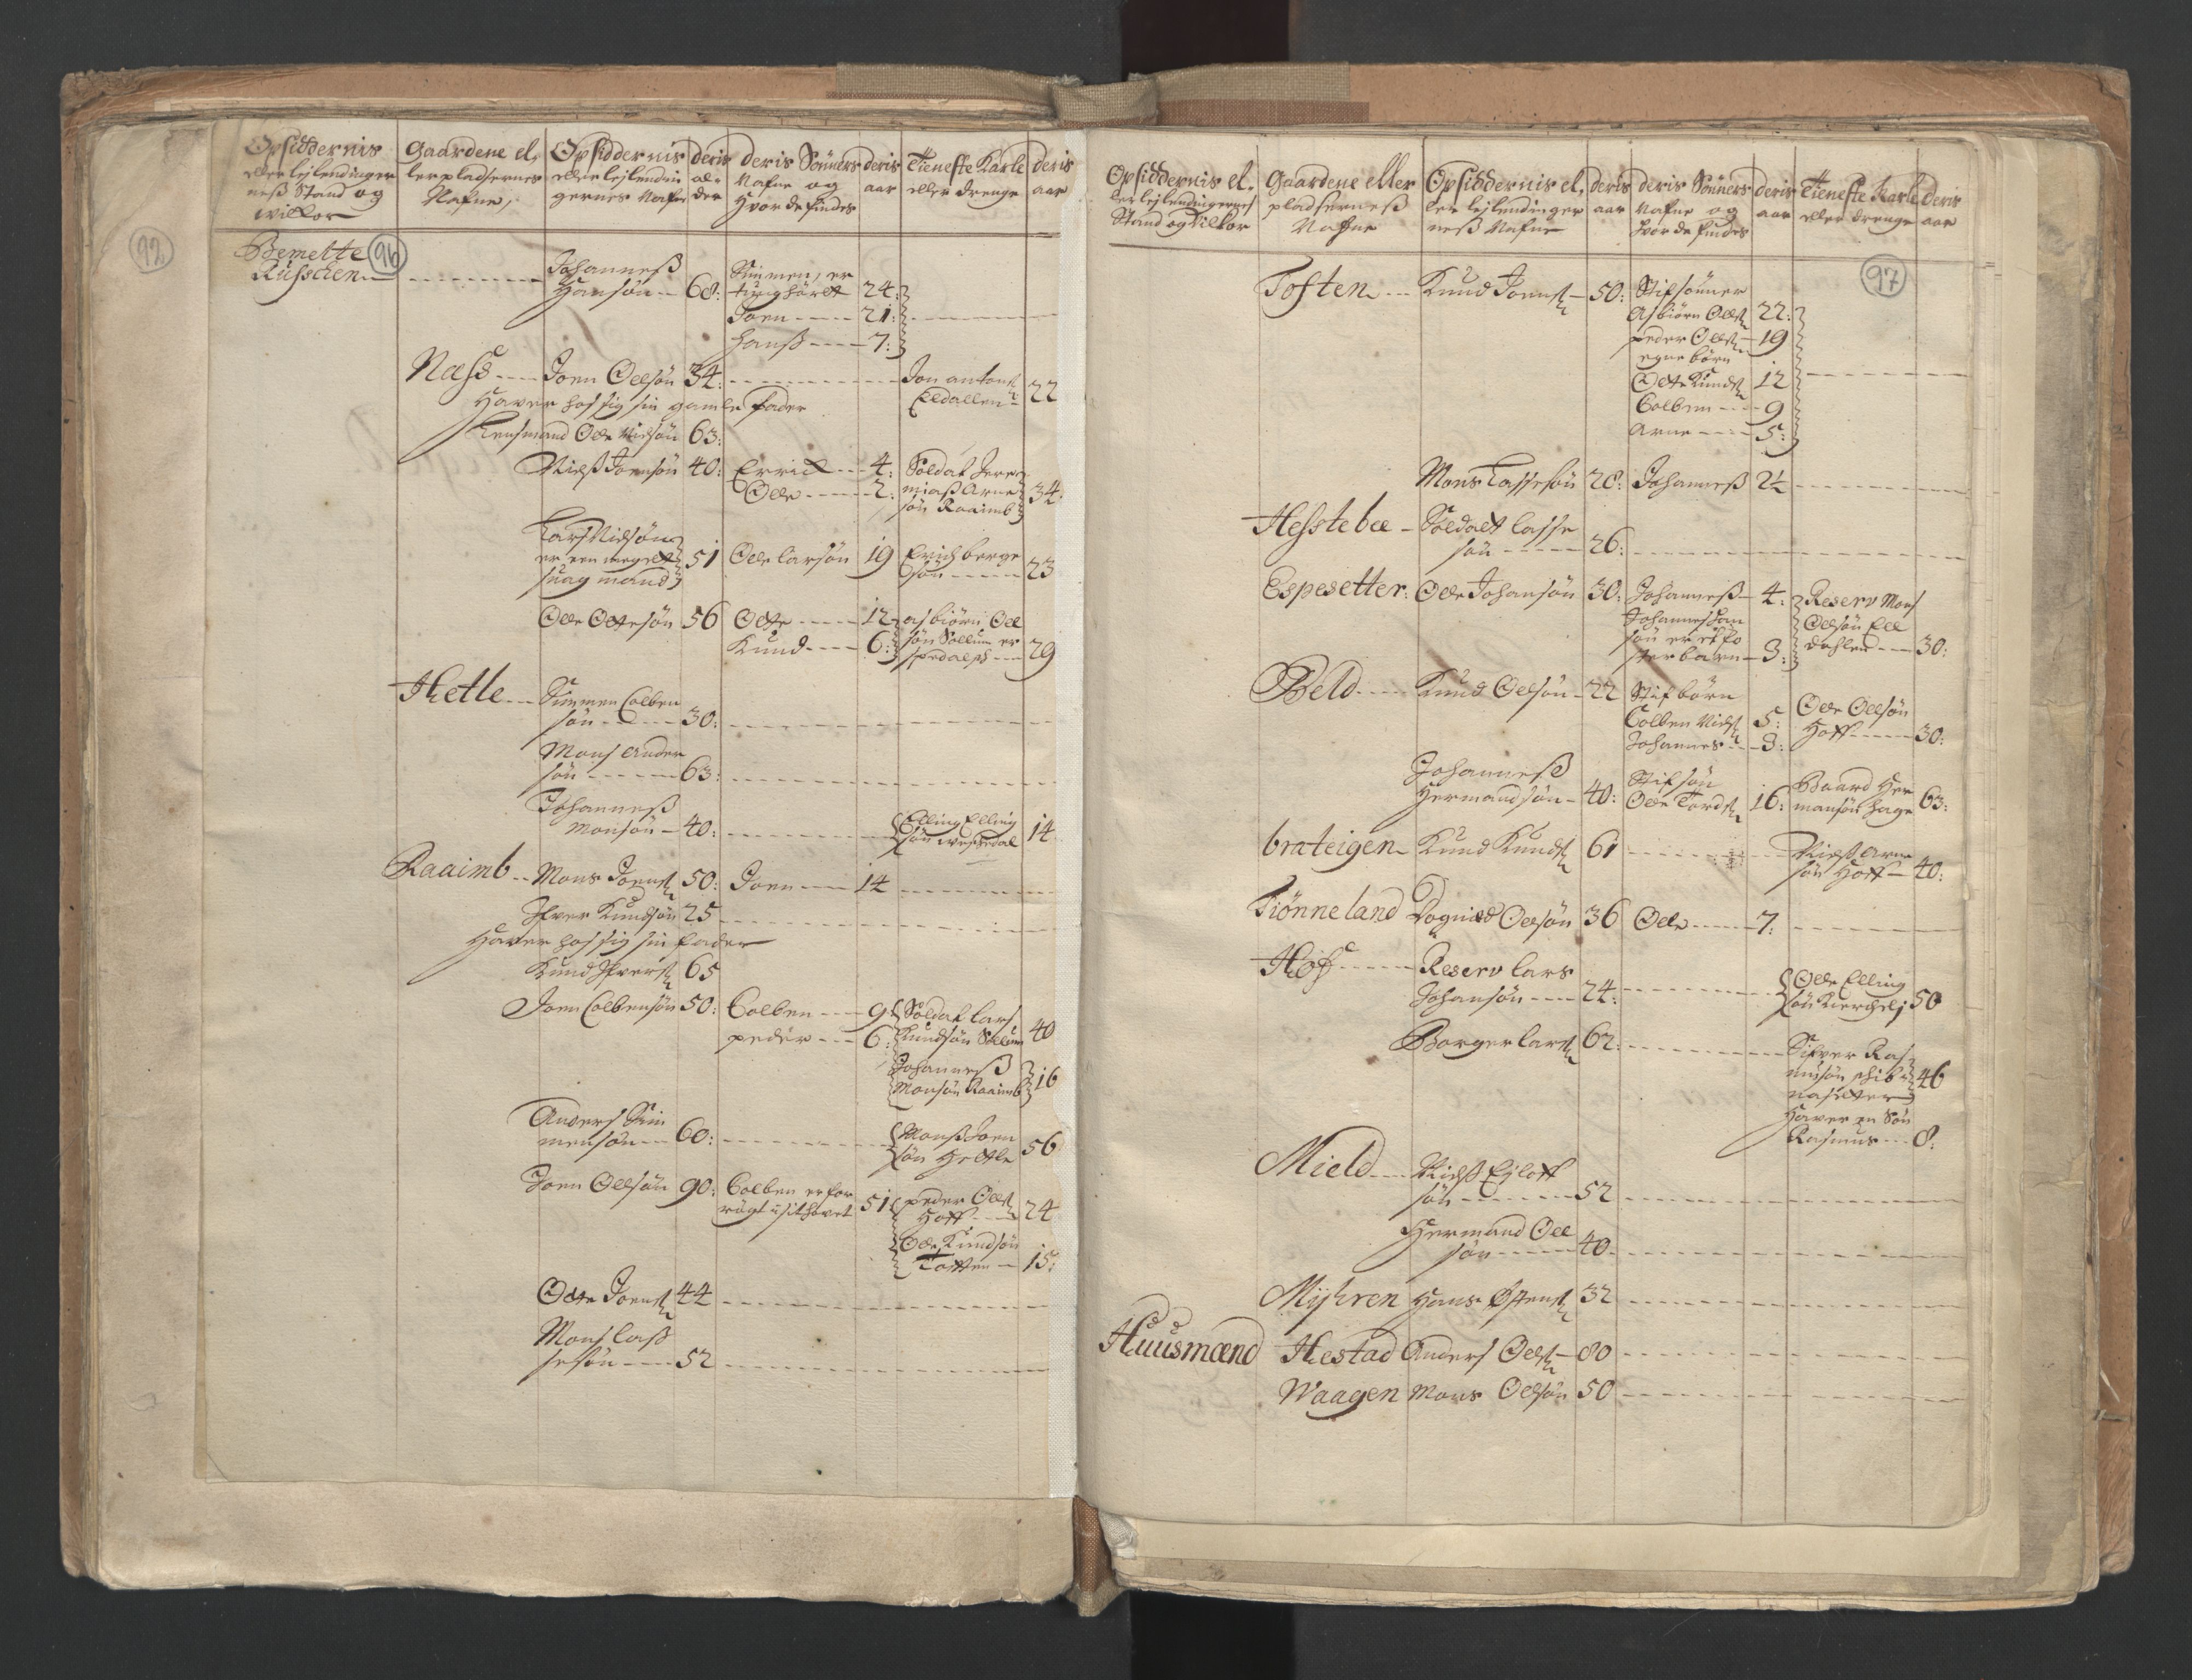 RA, Manntallet 1701, nr. 9: Sunnfjord fogderi, Nordfjord fogderi og Svanø birk, 1701, s. 96-97